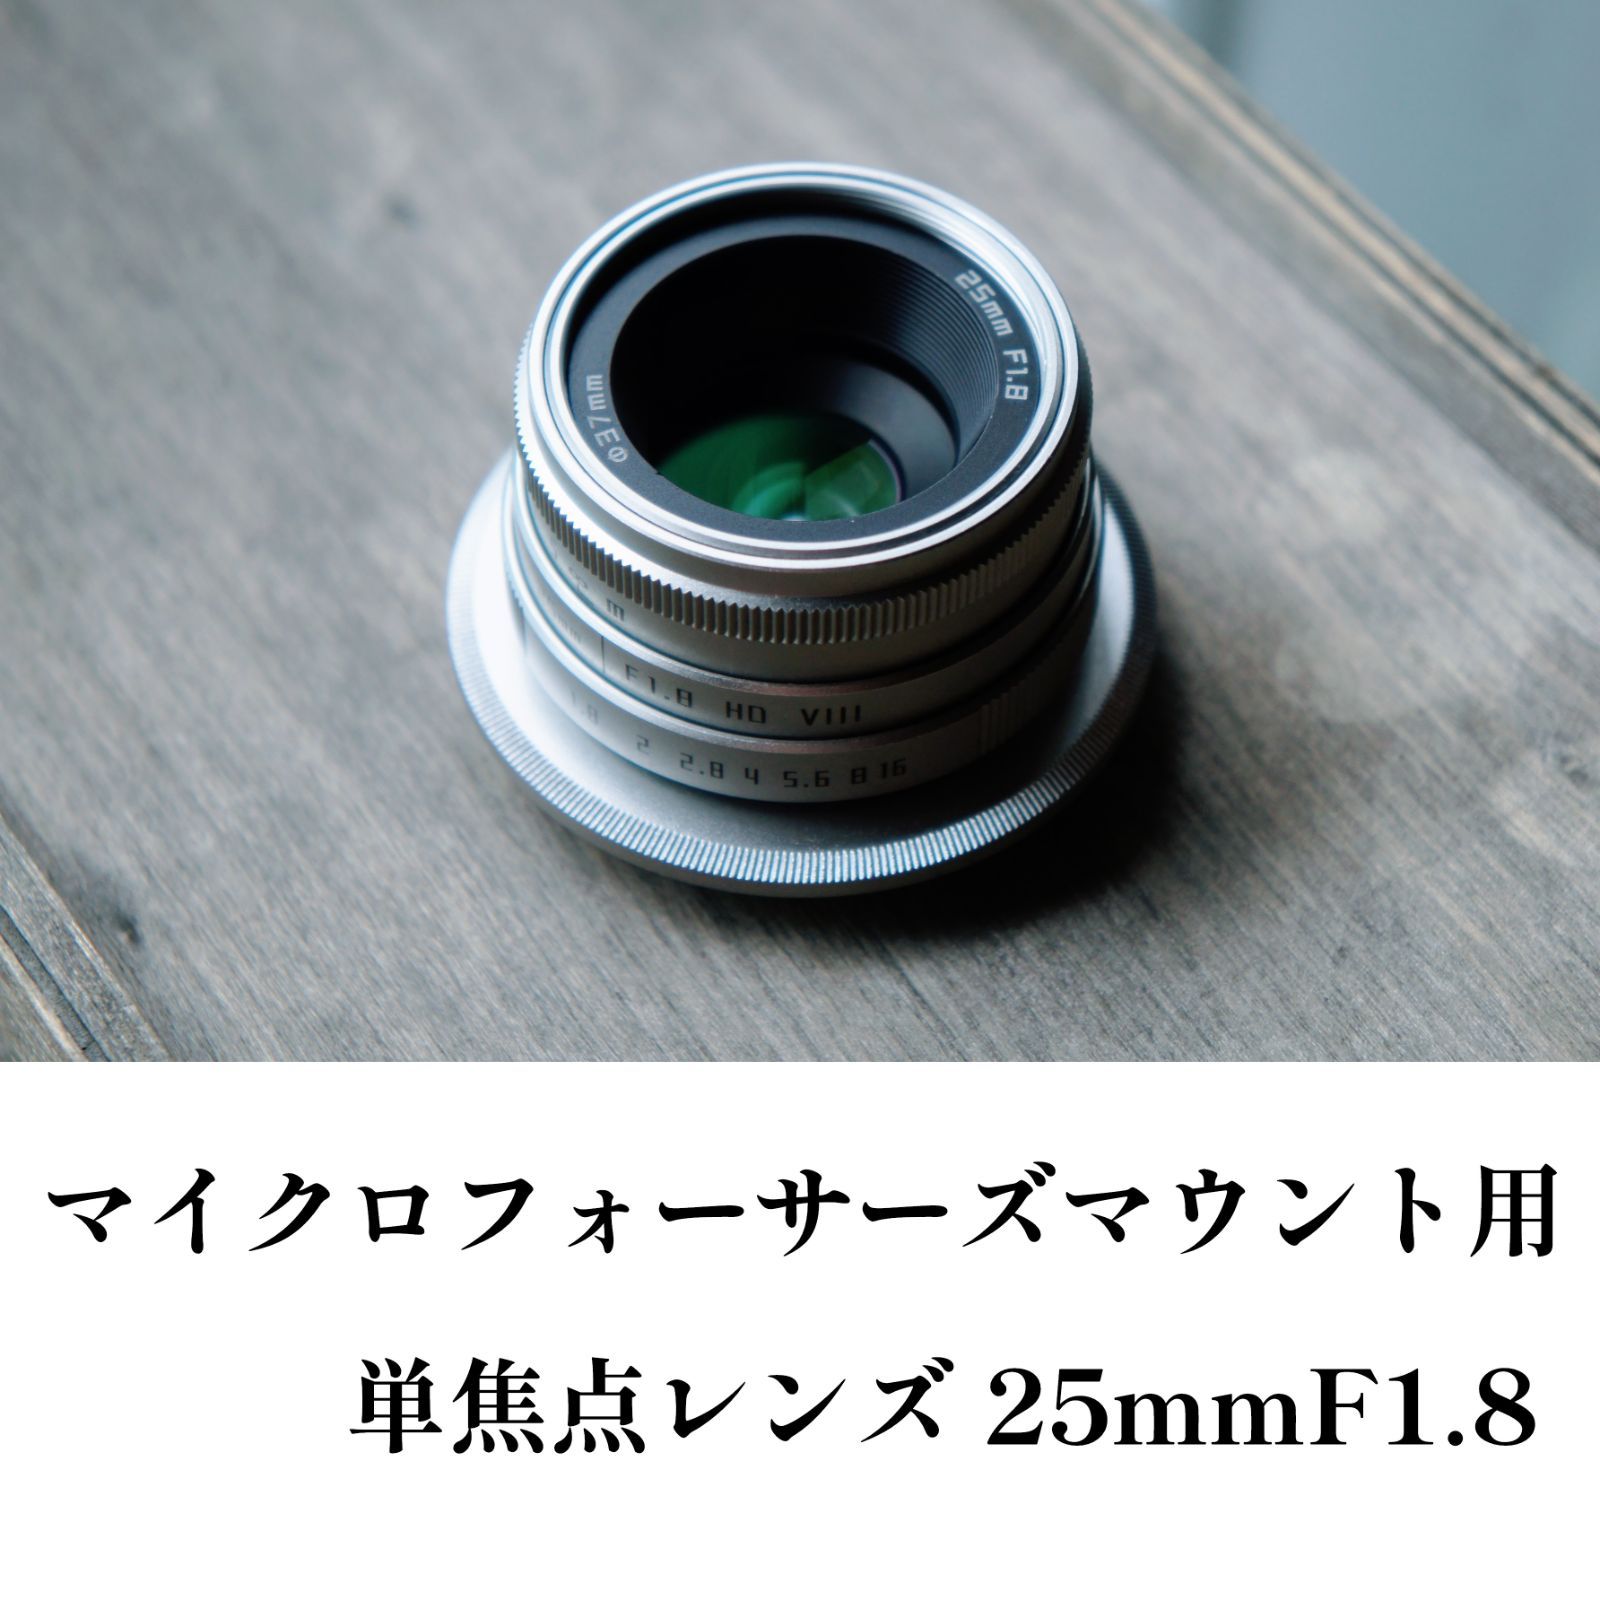 単焦点レンズ 25mmF1.8 マイクロフォーサーズマウント用